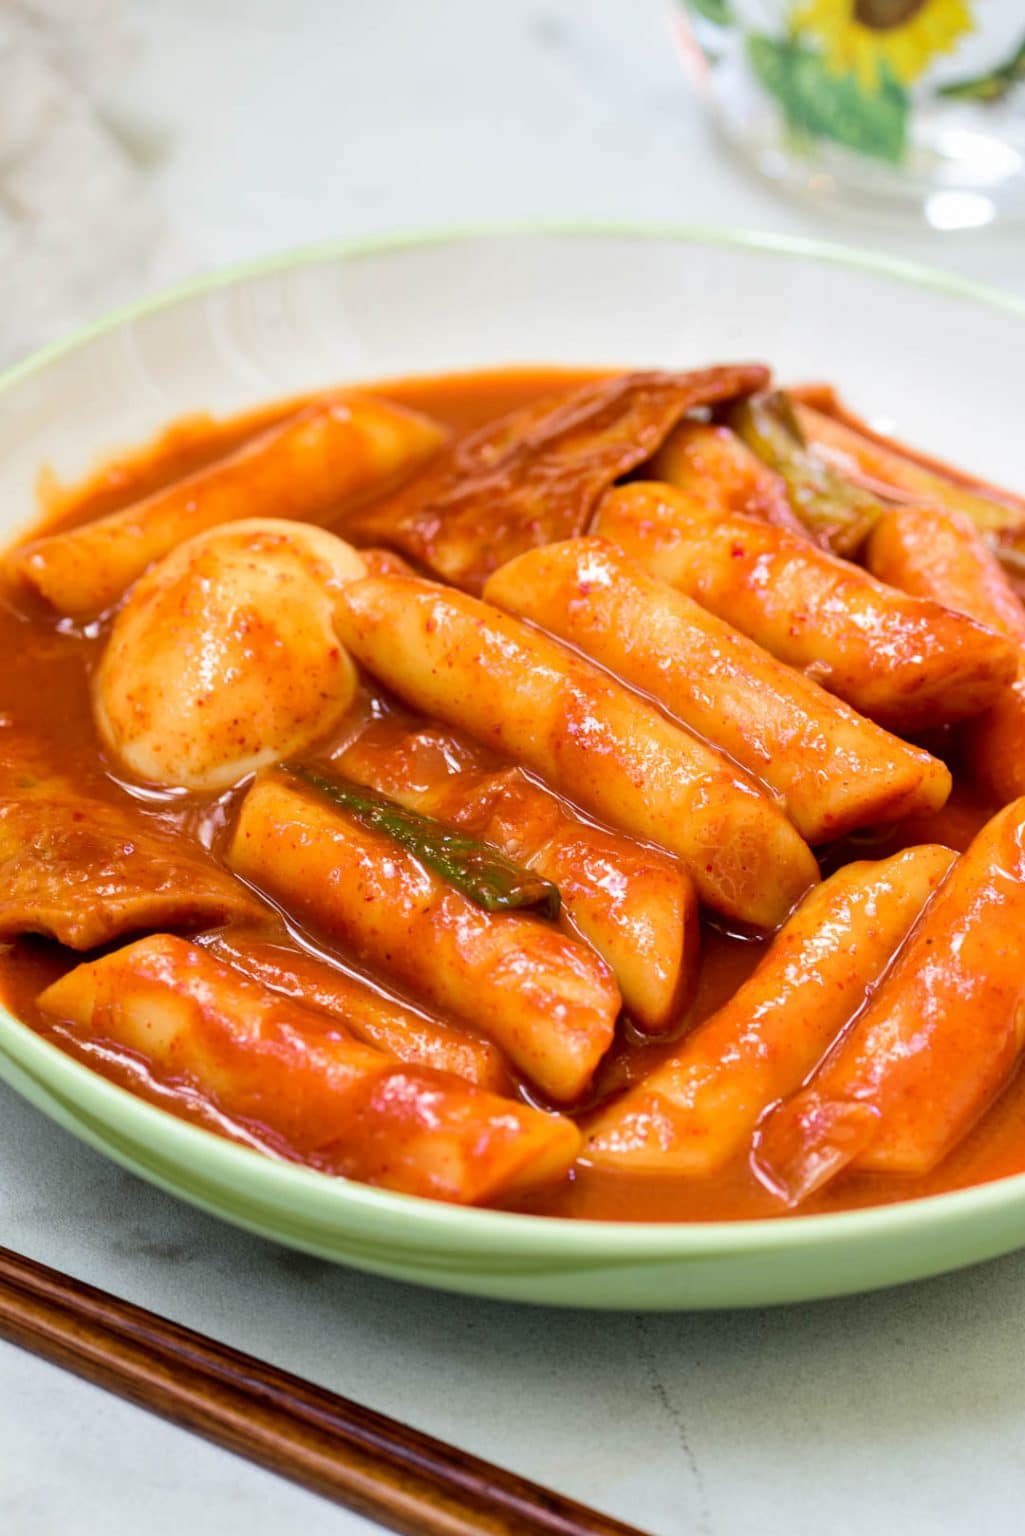 Tteokbokki (Spicy Stir-fried Rice Cakes) - Korean Bapsang